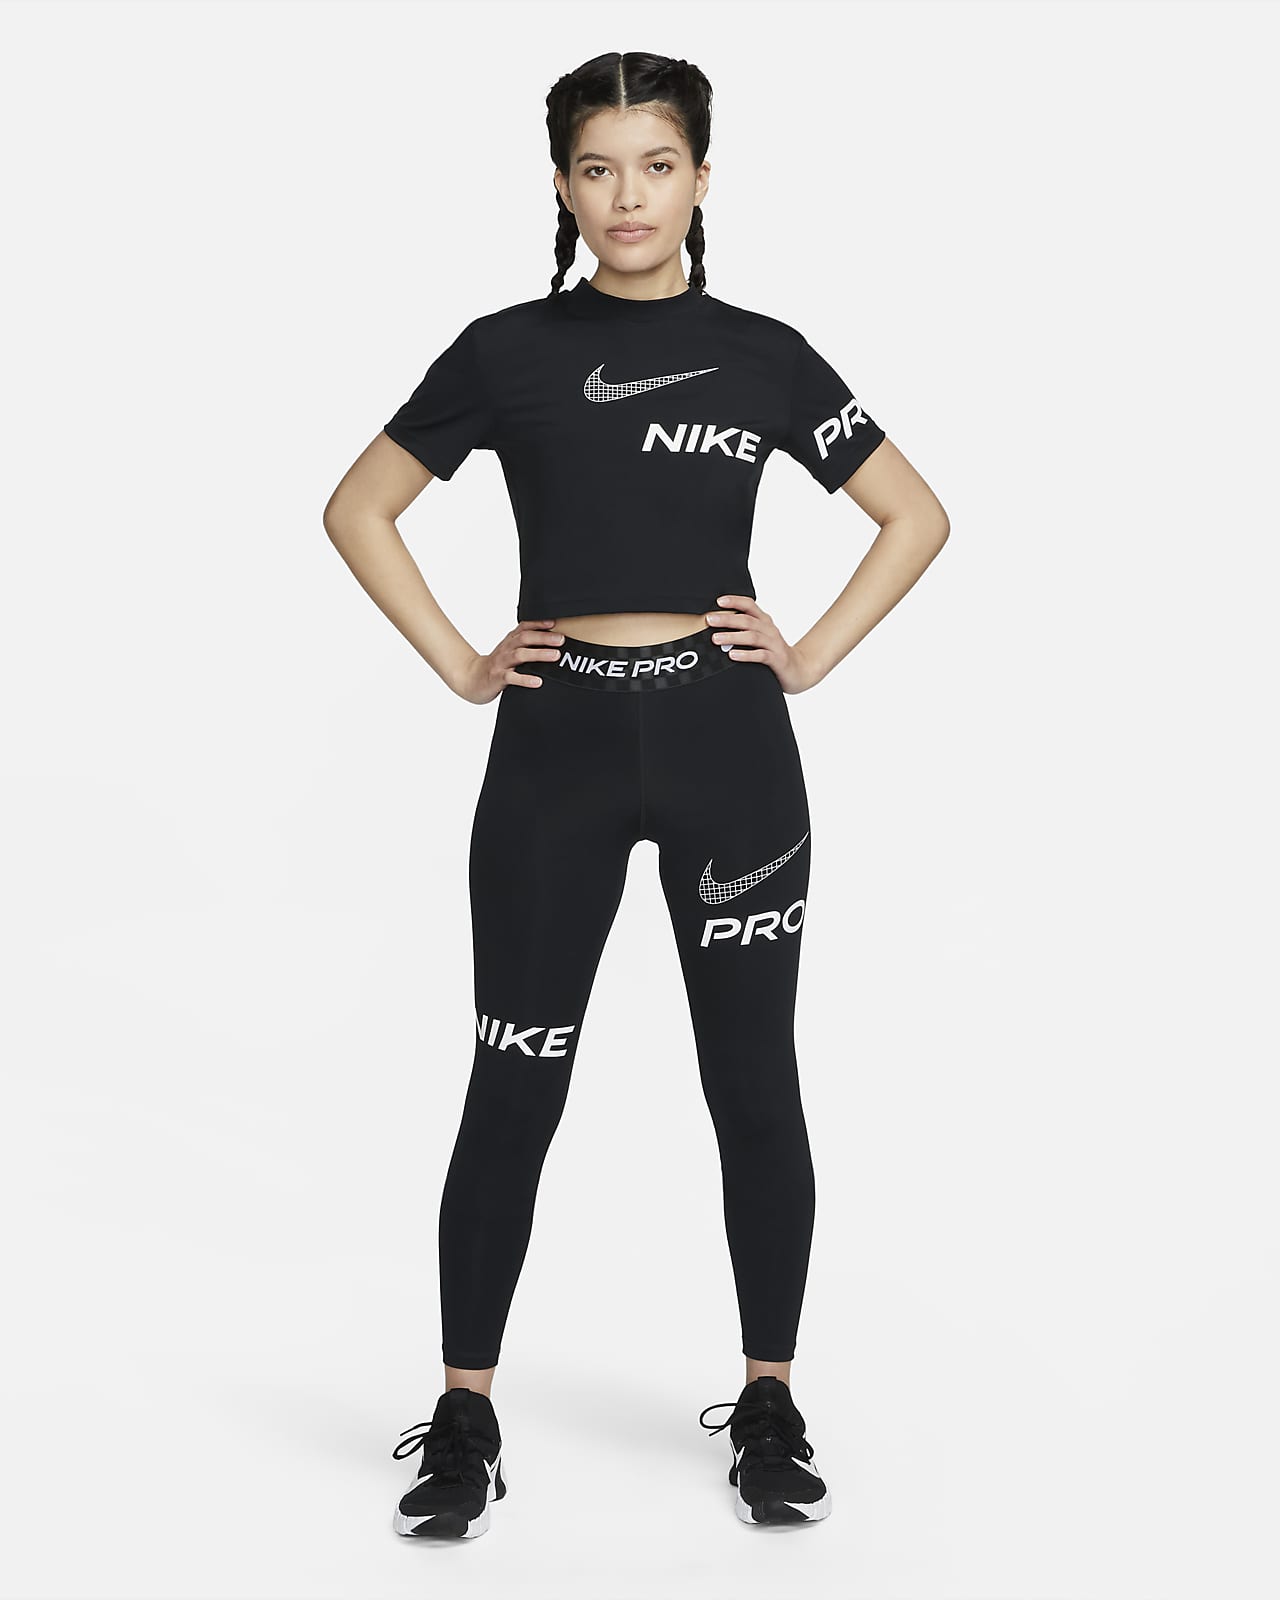 Some Nike Pro Leggings : r/FashionReps